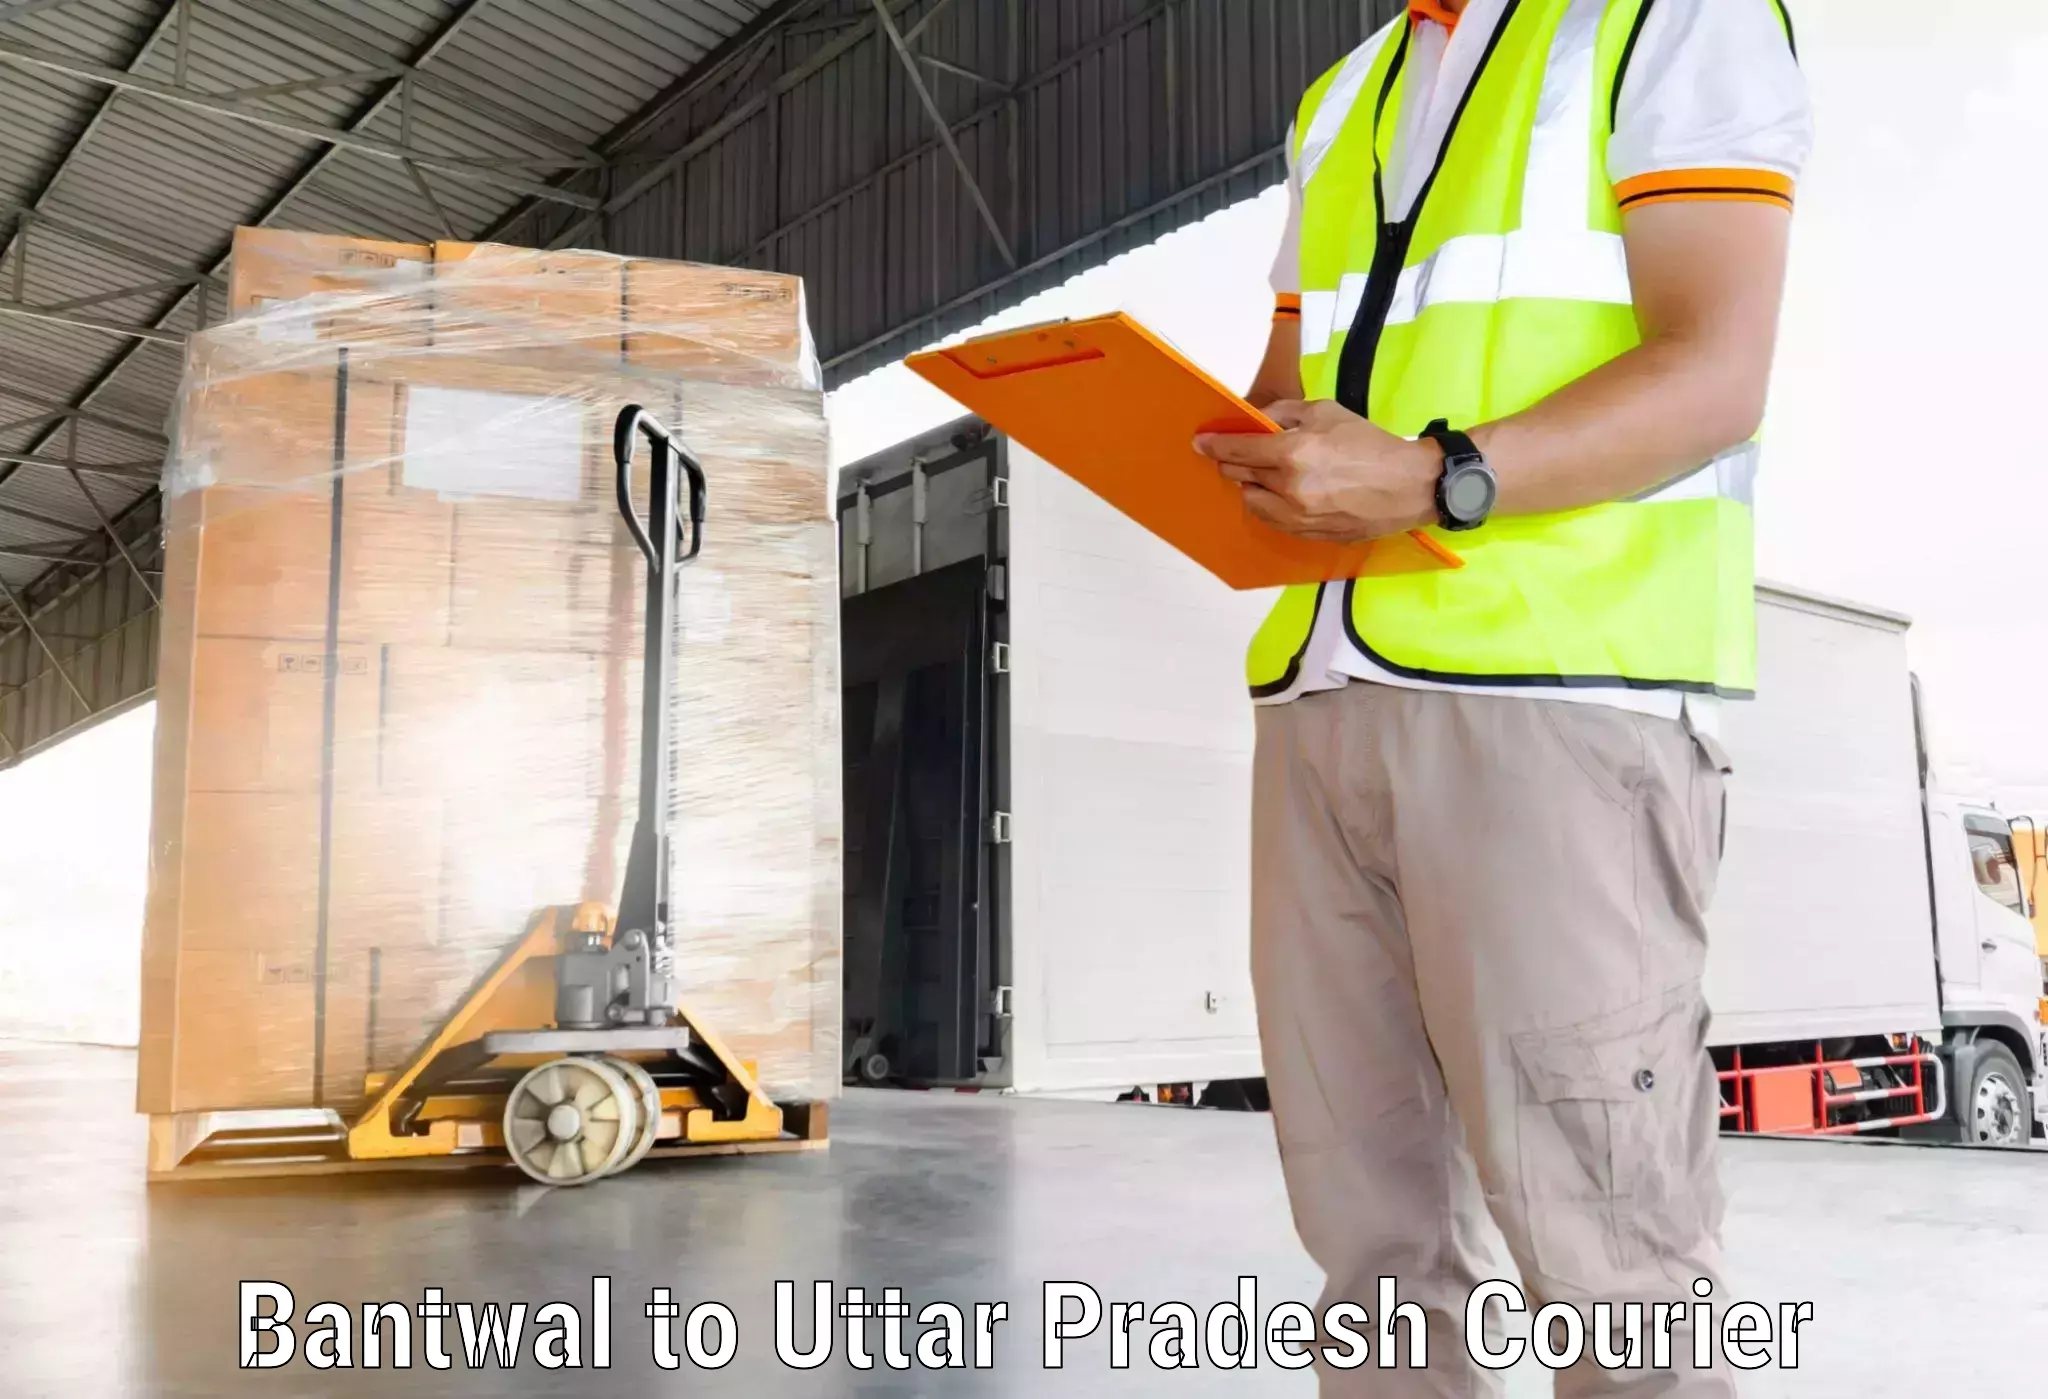 International parcel service Bantwal to Sadat